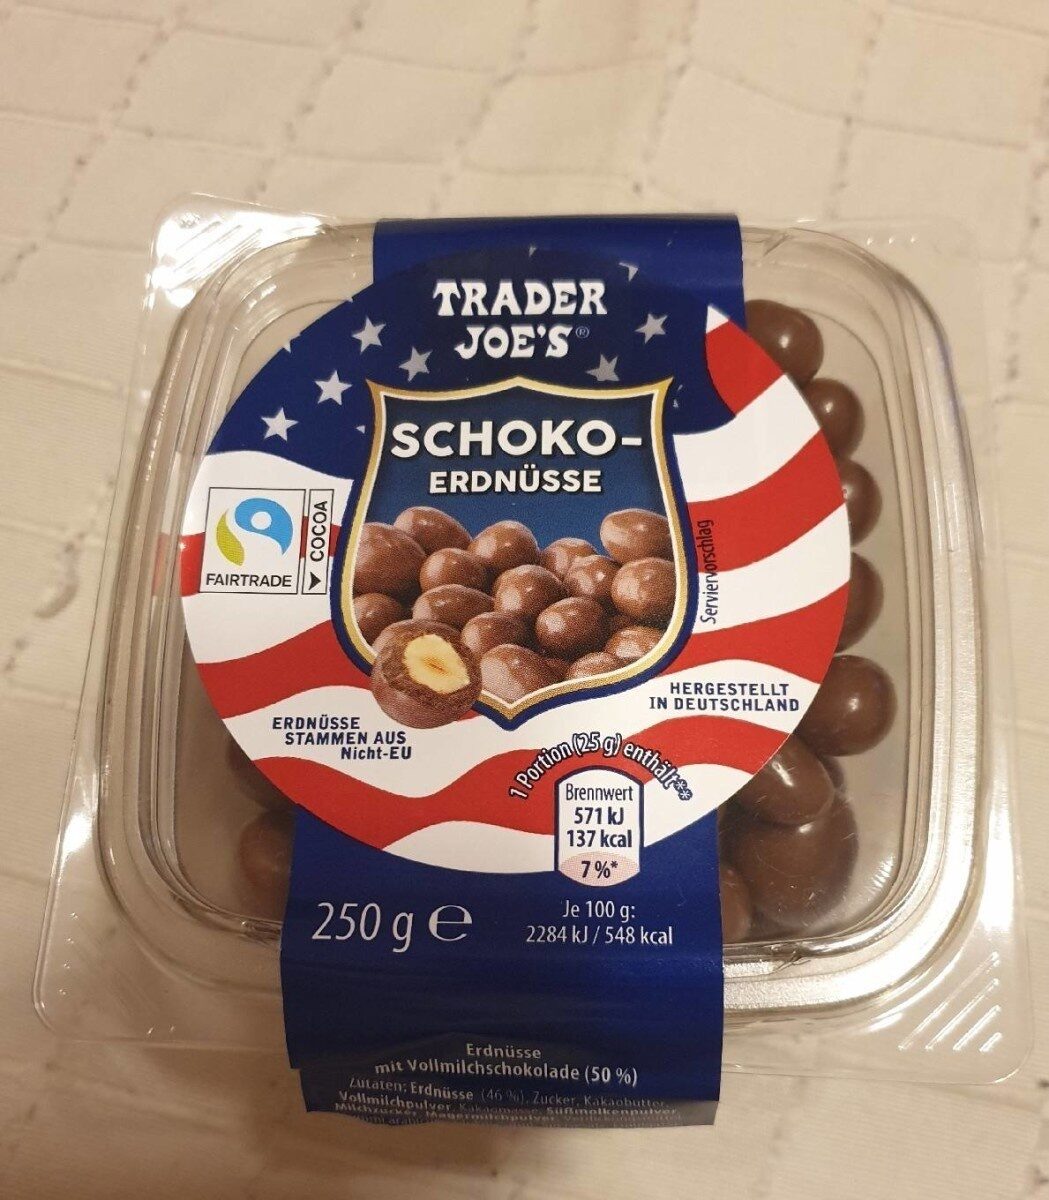 Schoko-Erdnüsse - Product - de